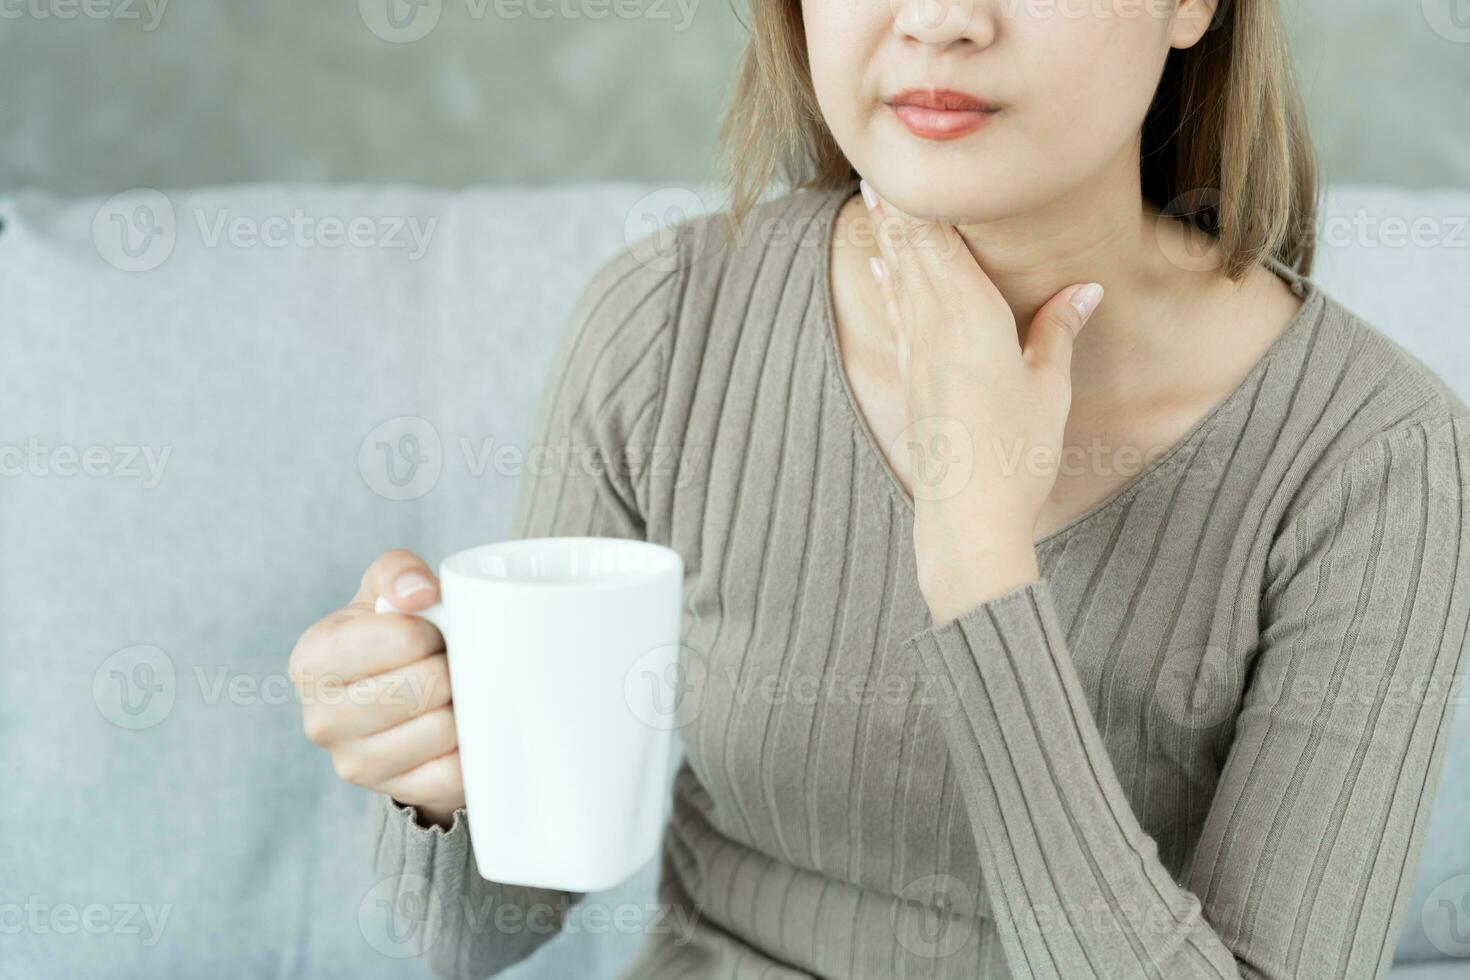 asiatisch Frau stellen ihr Hand auf ihr Hals fällig zu ein wund Kehle. weiblich Mandelentzündung Ursachen ein Entzündung. behandelt durch nehmen Wasser, nehmen Antibiotika, konsultieren ein Arzt, Virus, Corona Virus, Grippe, Grippe foto